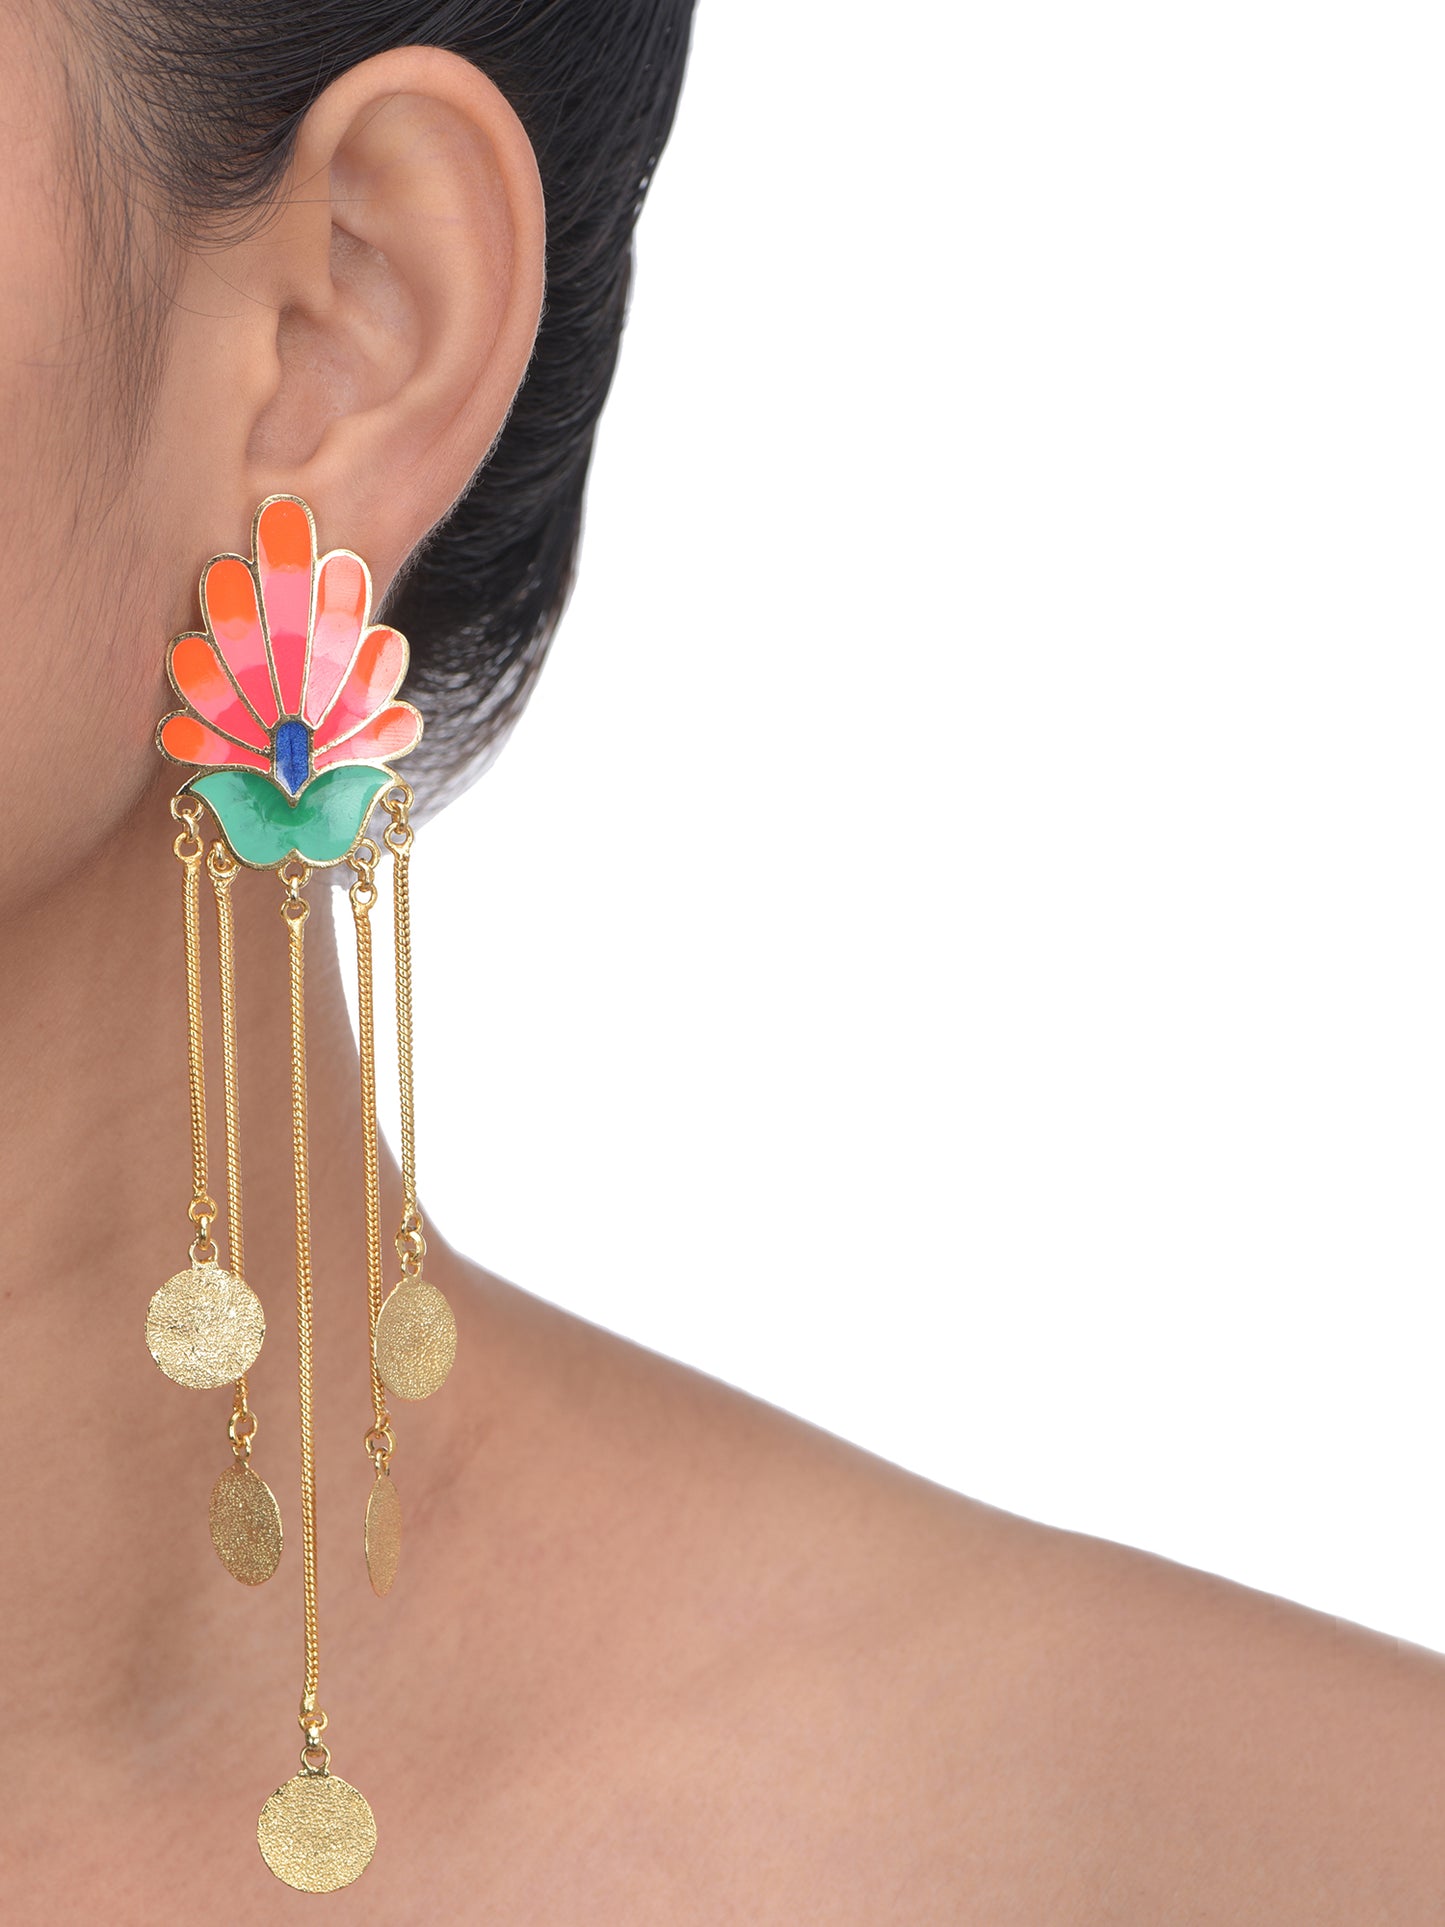 Royal bloom earrings